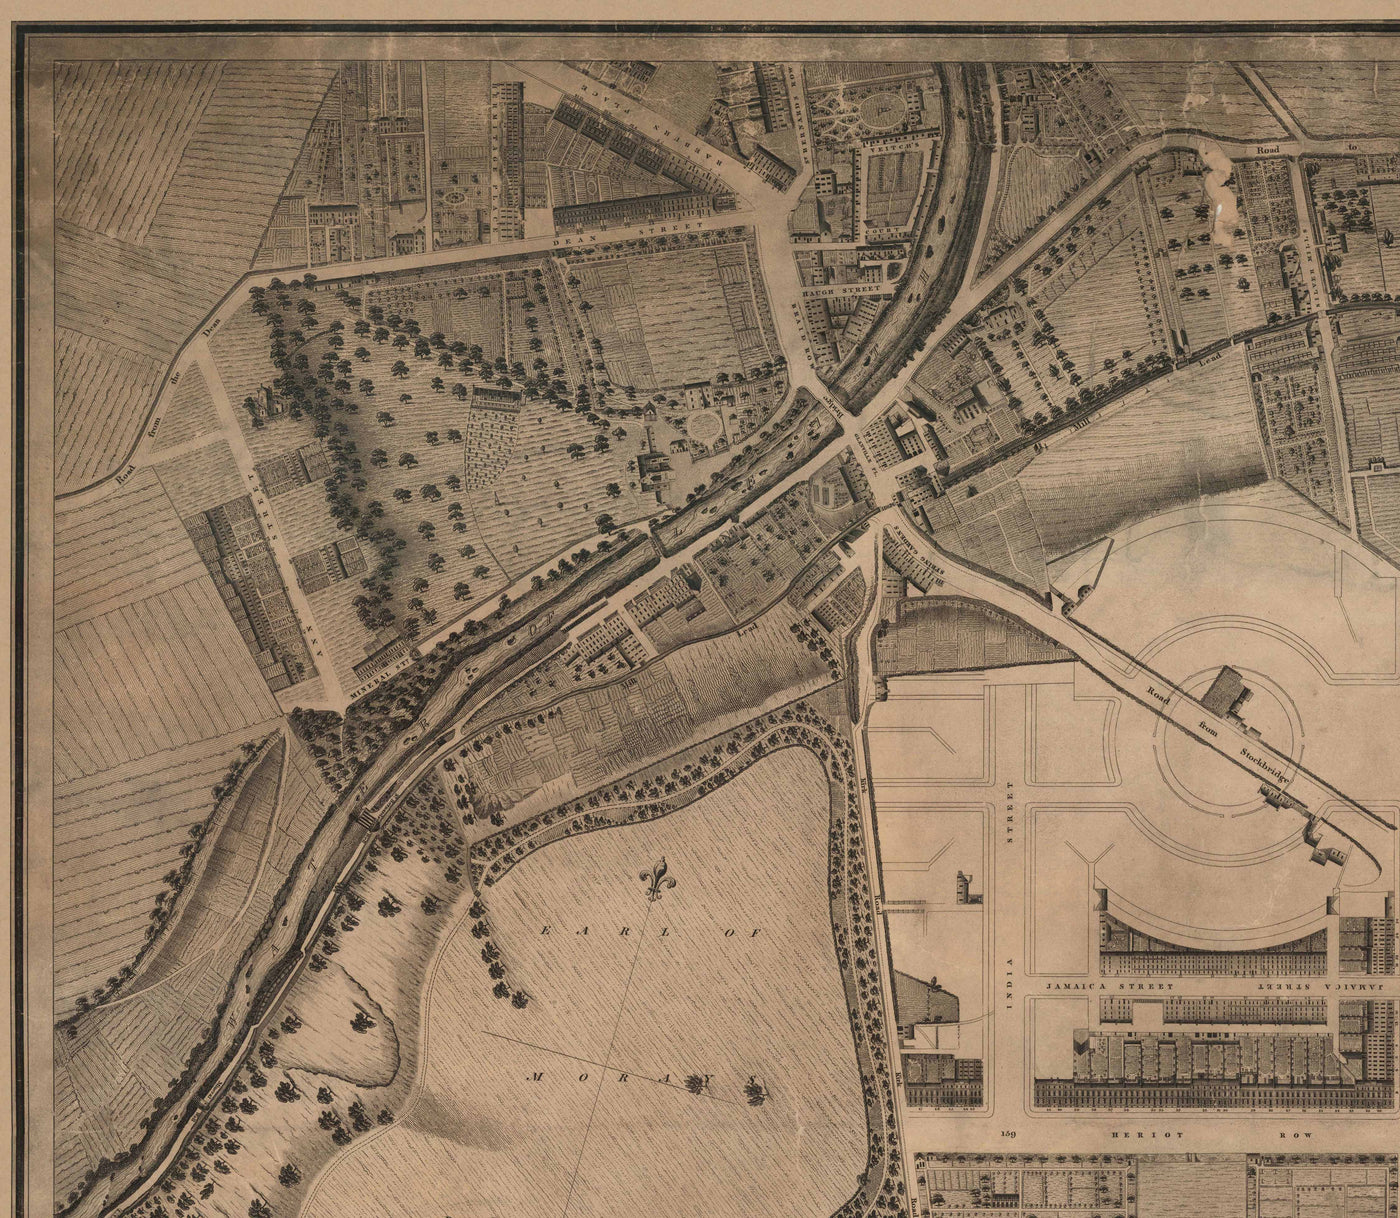 Ancienne carte de la nouvelle ville d'Édimbourg en 1821 par James Kirkwood - Calton Hill, Queen Street, York Place, Prince Street, Great King Street